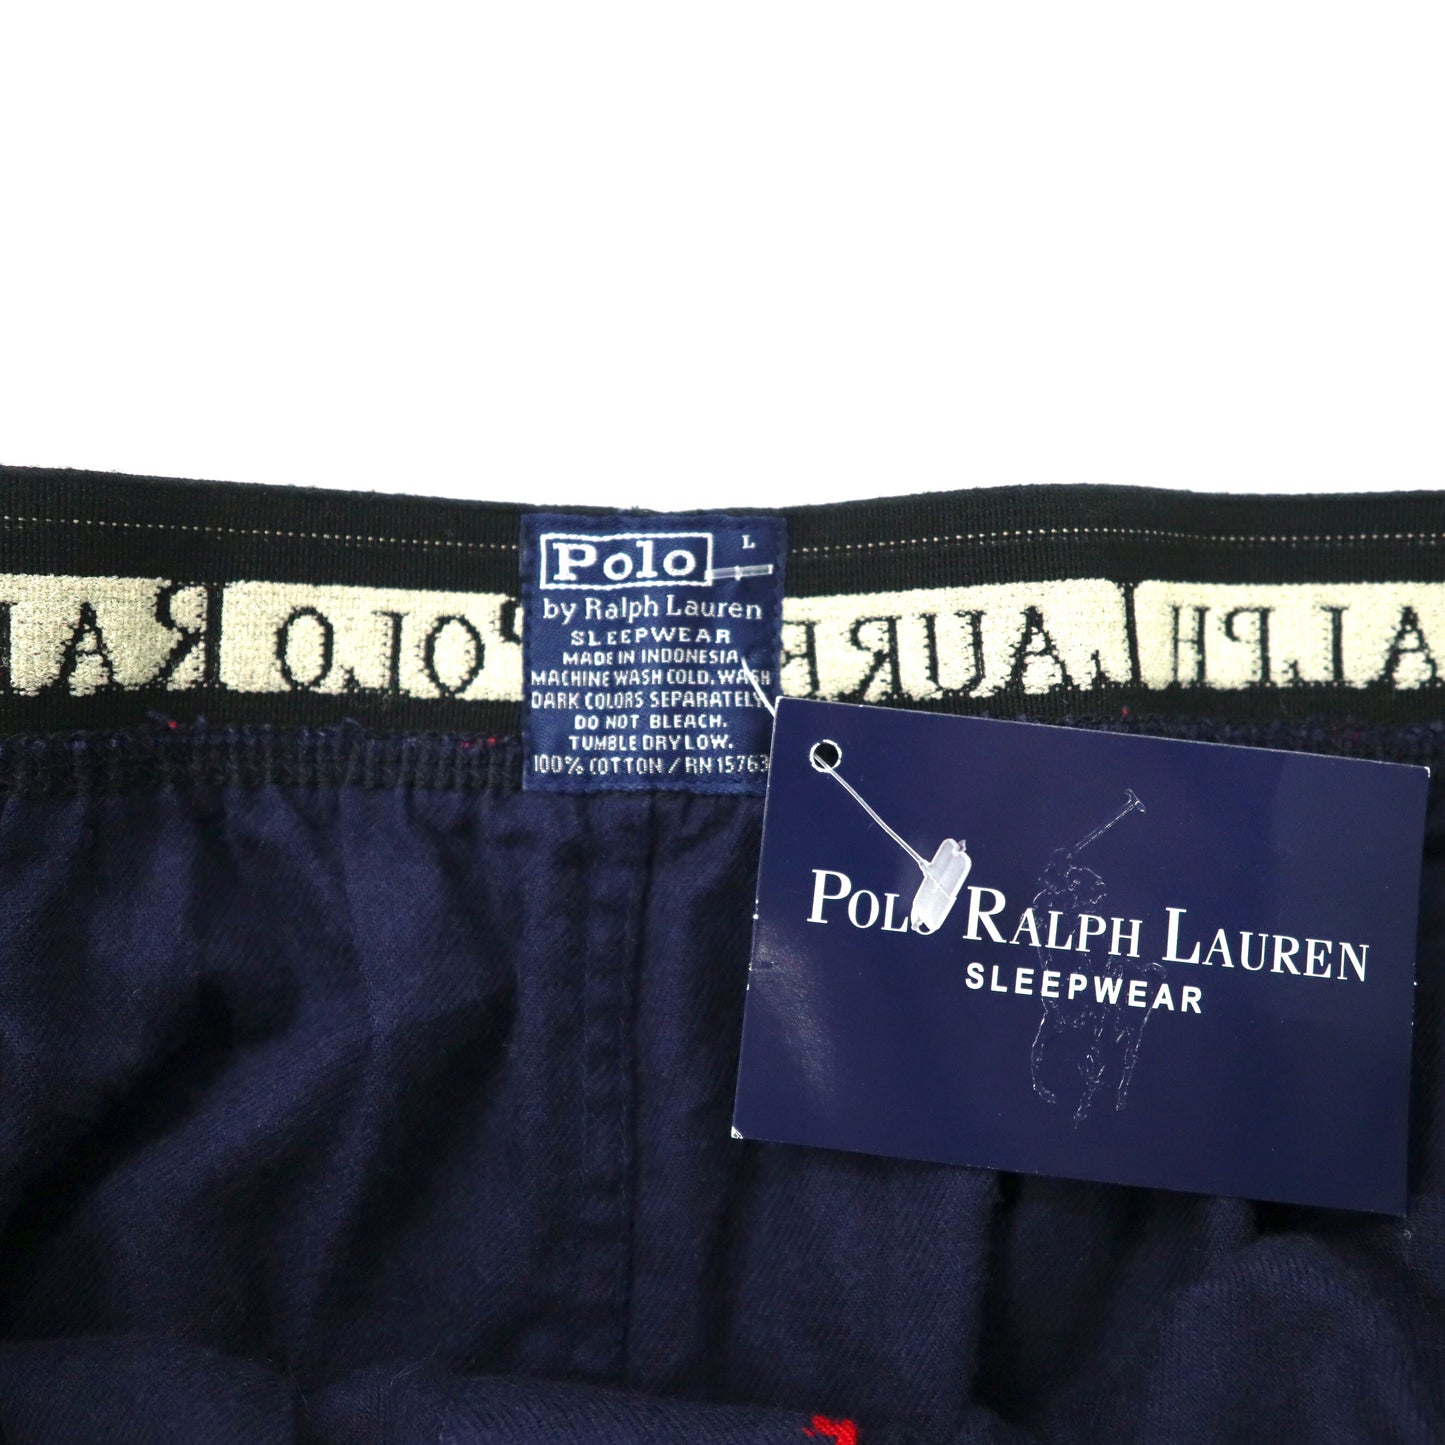 Polo by Ralph Lauren イージーパンツ パジャマパンツ L ネイビー コットン スモールポニー 総柄 未使用品